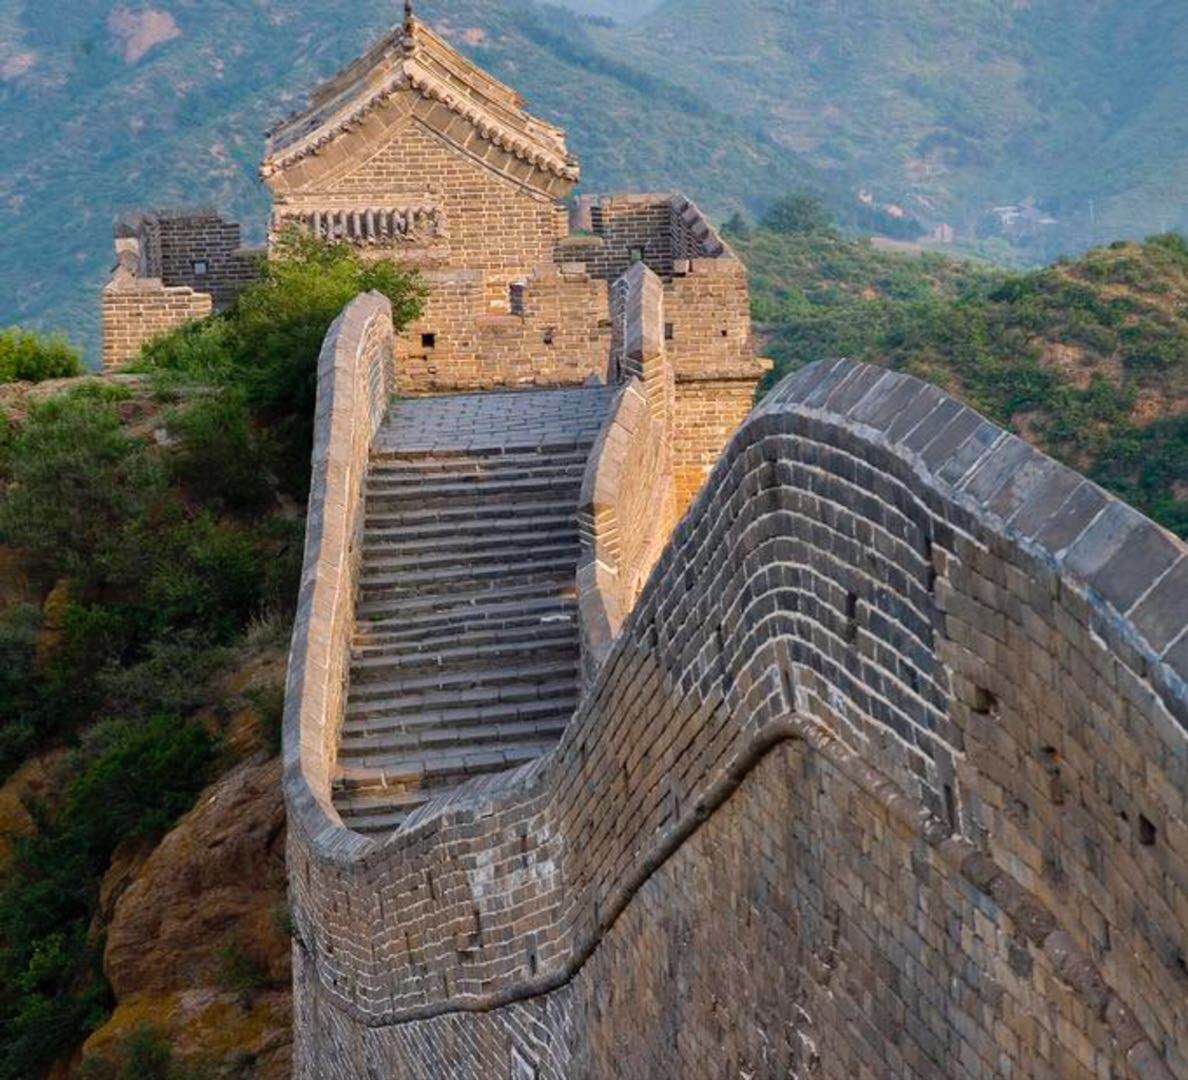 Jinshanling Great Wall Hiking Tour